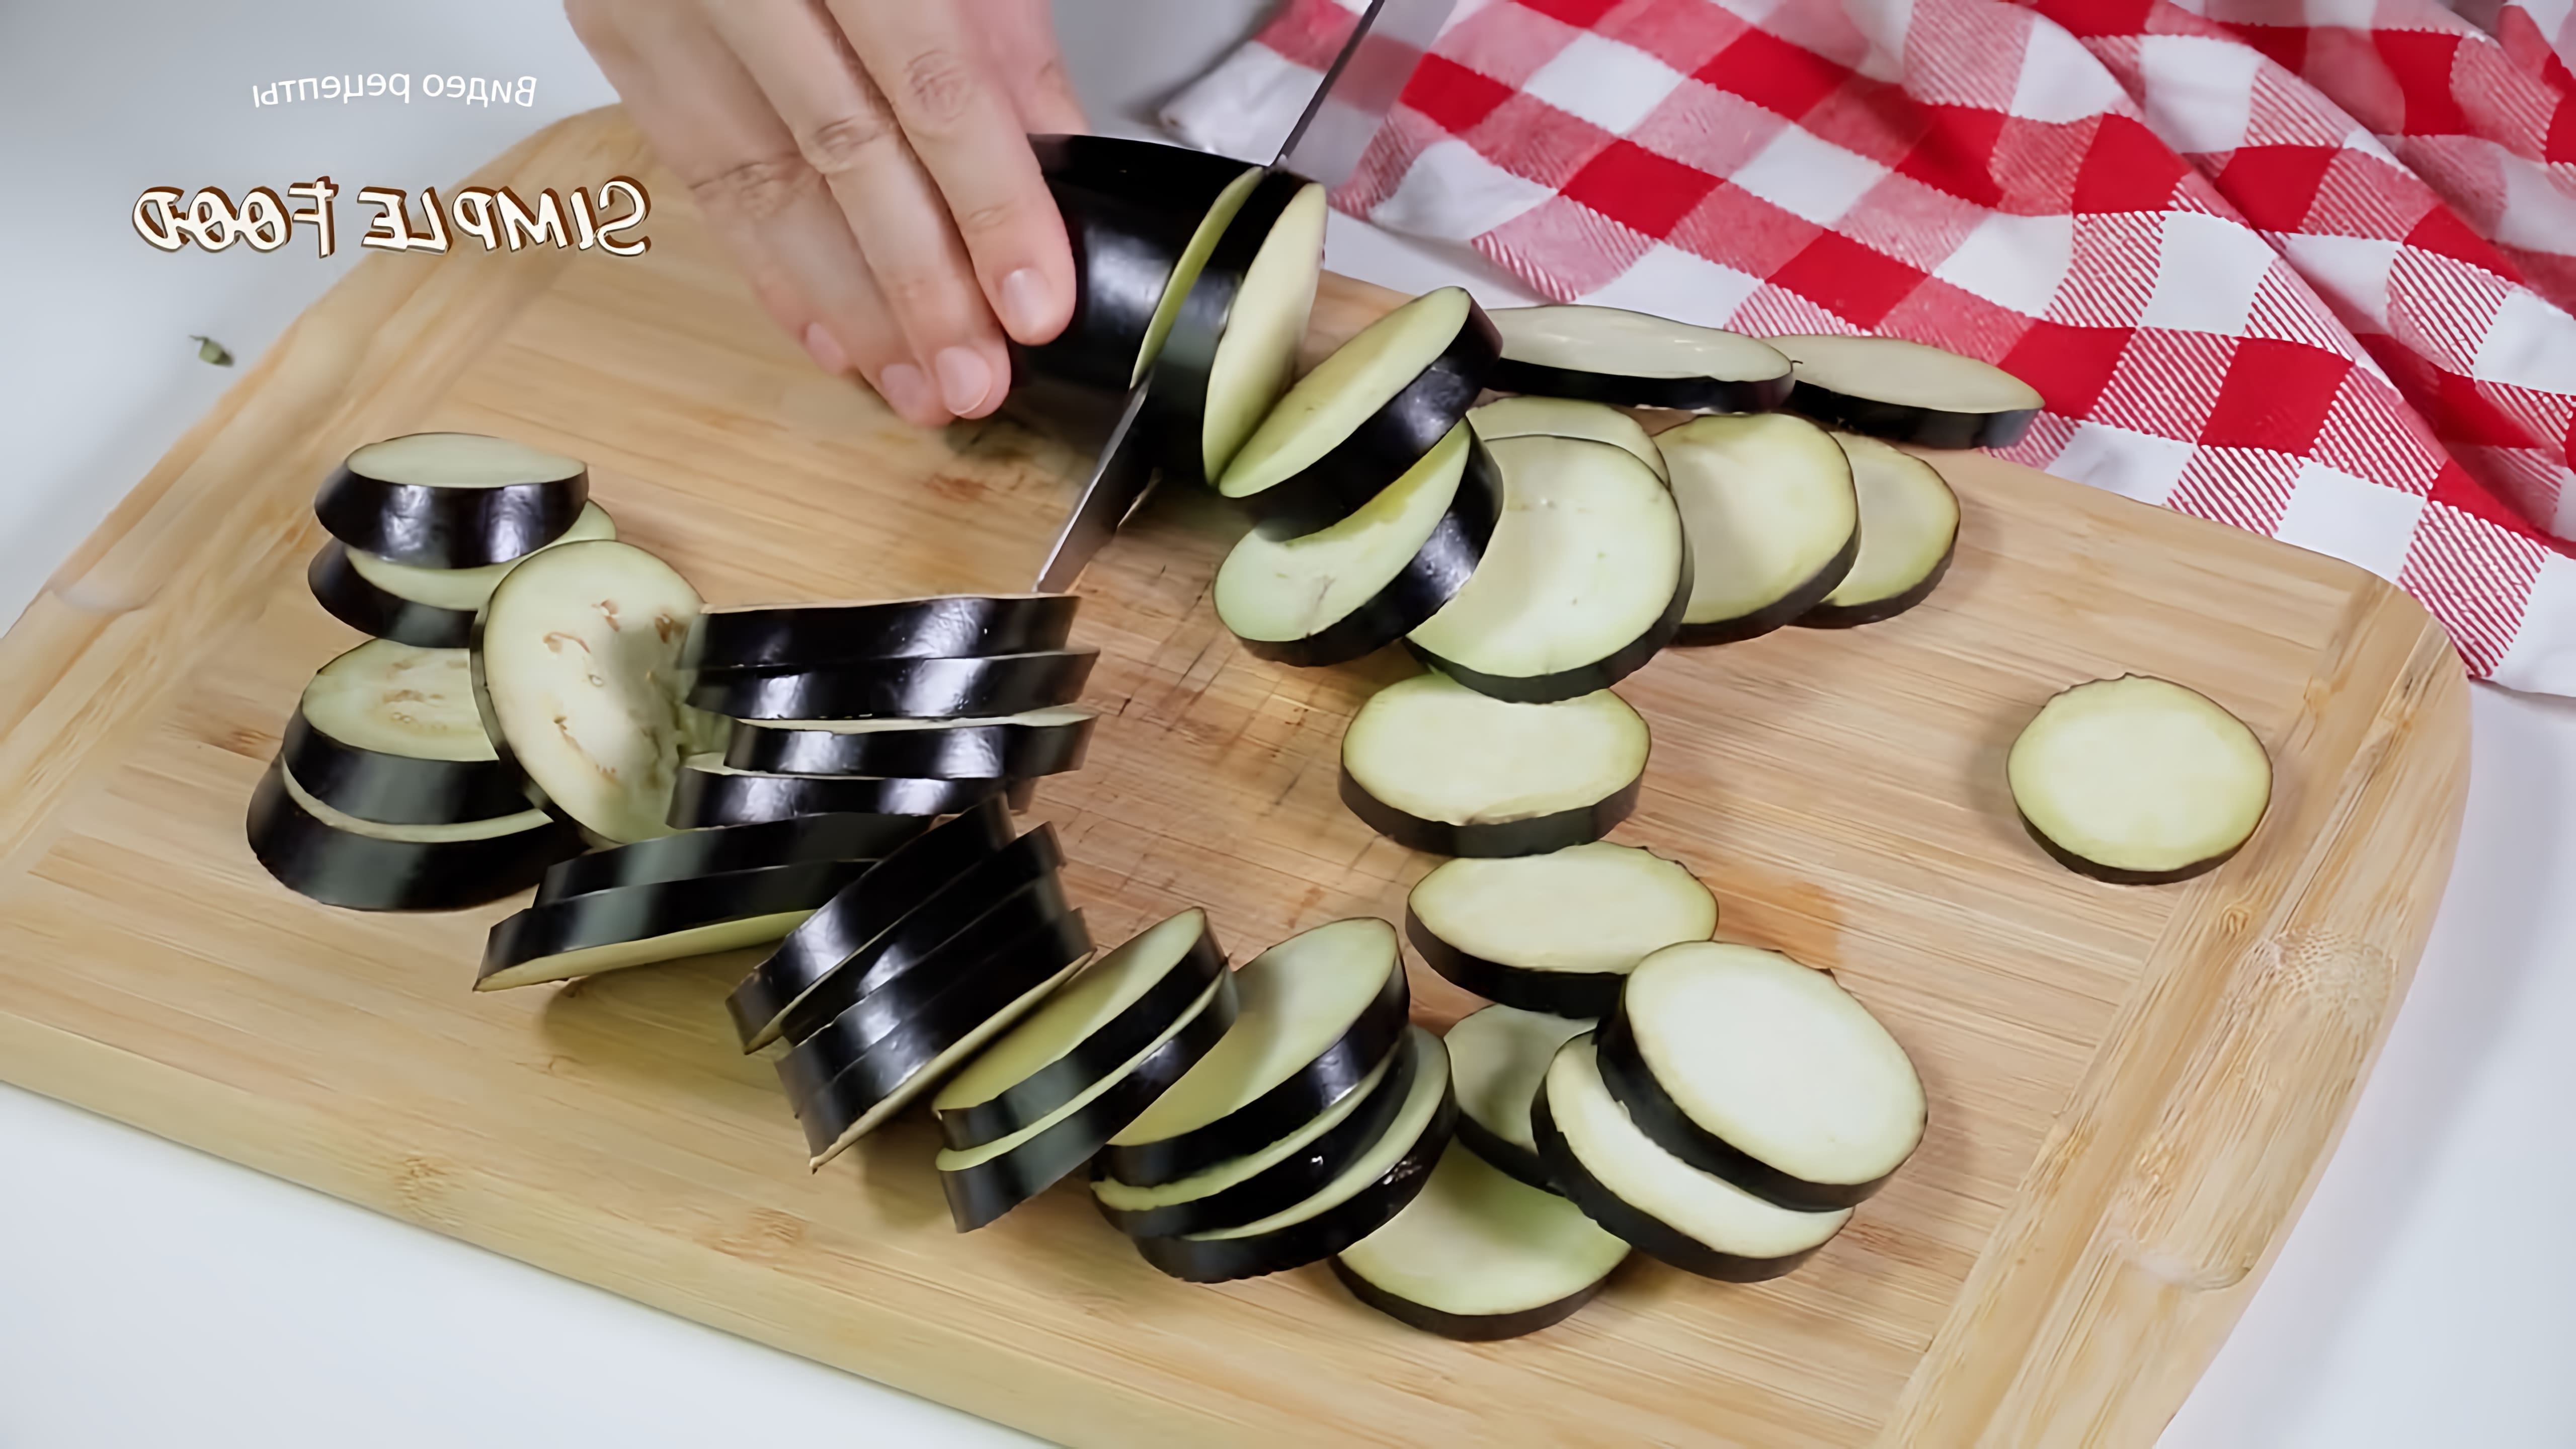 В этом видео-ролике мы увидим, как приготовить вкусное и полезное блюдо из кабачков и баклажанов